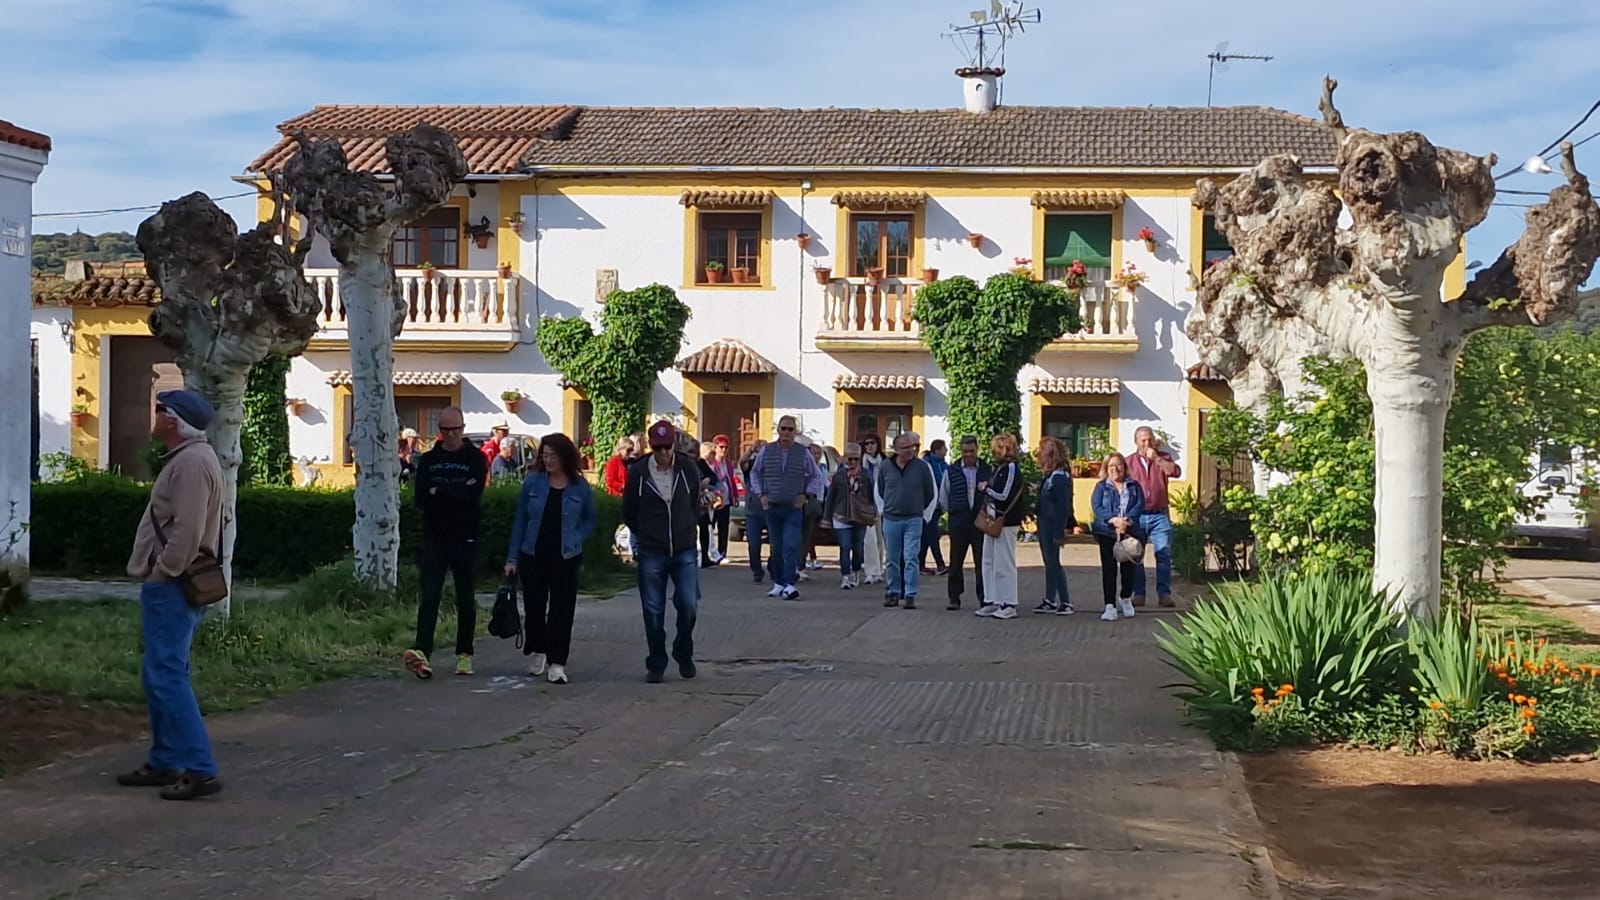 Habitantes de los pueblos de colonización del área de Machacón se encuentran hoy de visita a los núcleos de Águeda, Sanjuanejo, Ivanrey, arrabal de San Sebastián y Conejera